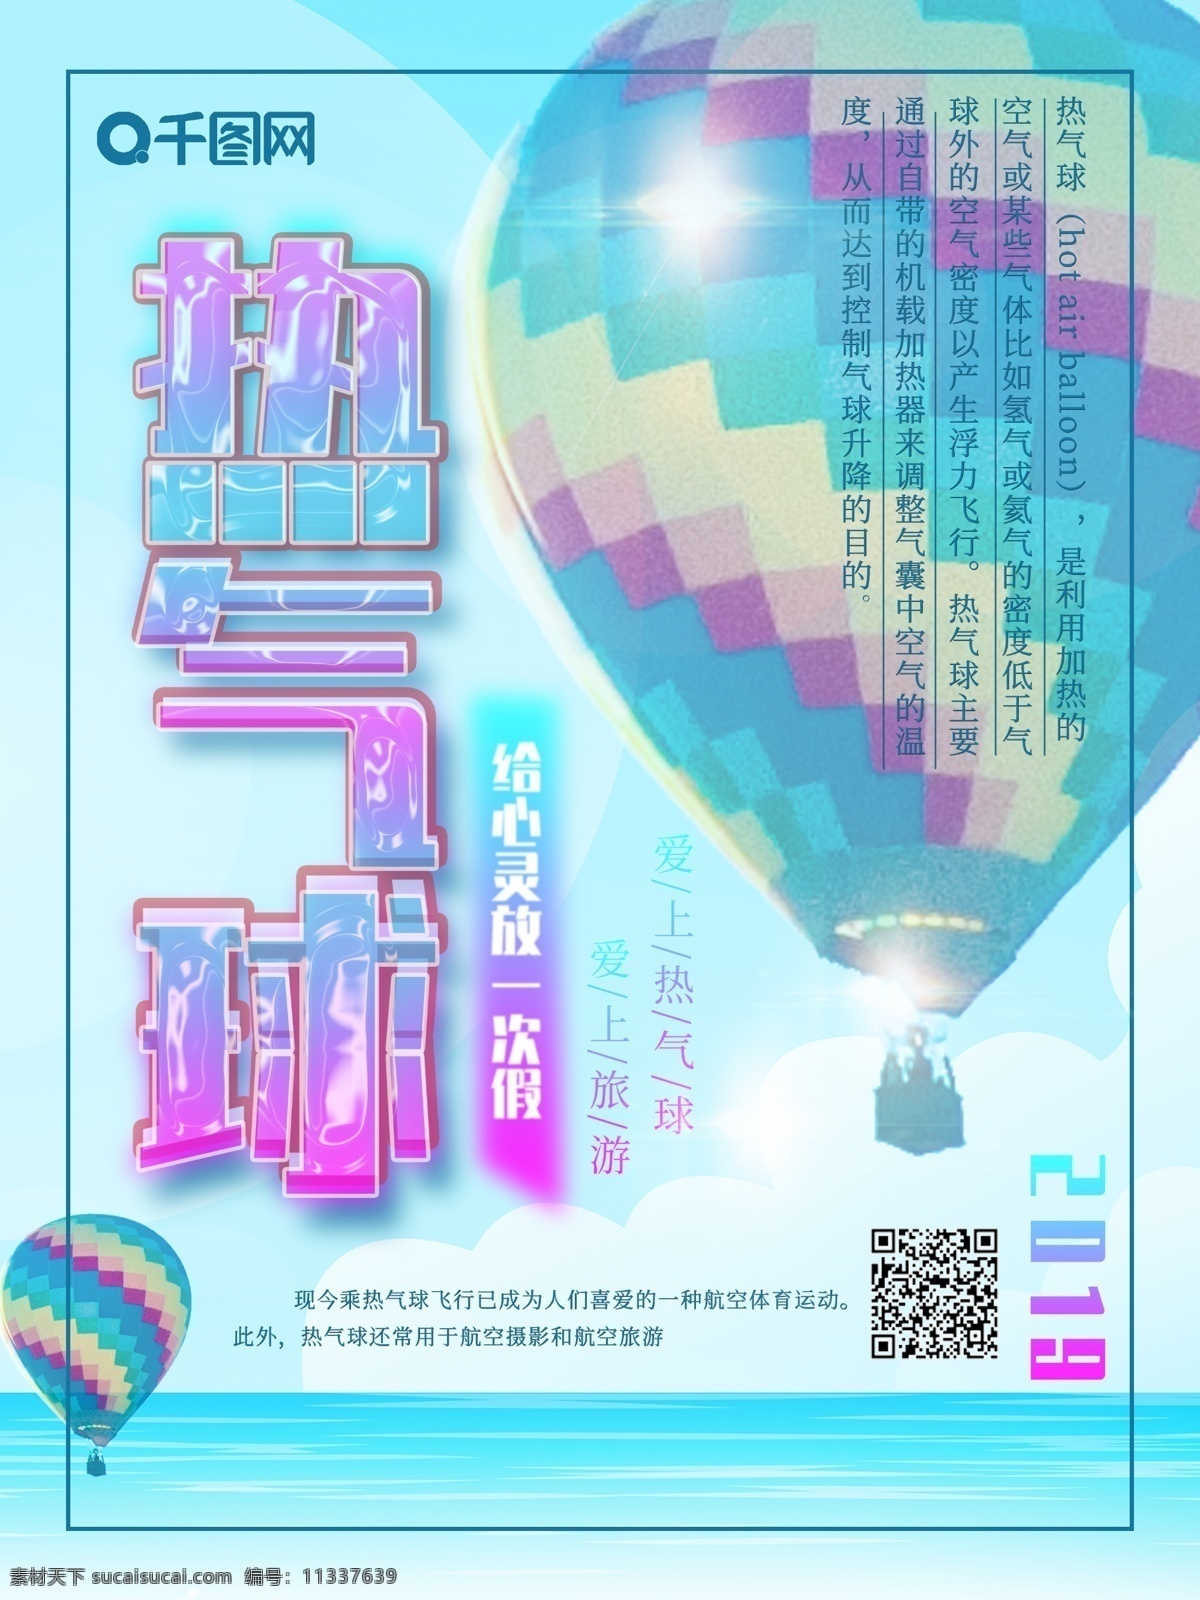 热气球 挑战 宣传海报 极限运动 体育海报 旅游海报 爱上热气球 简约